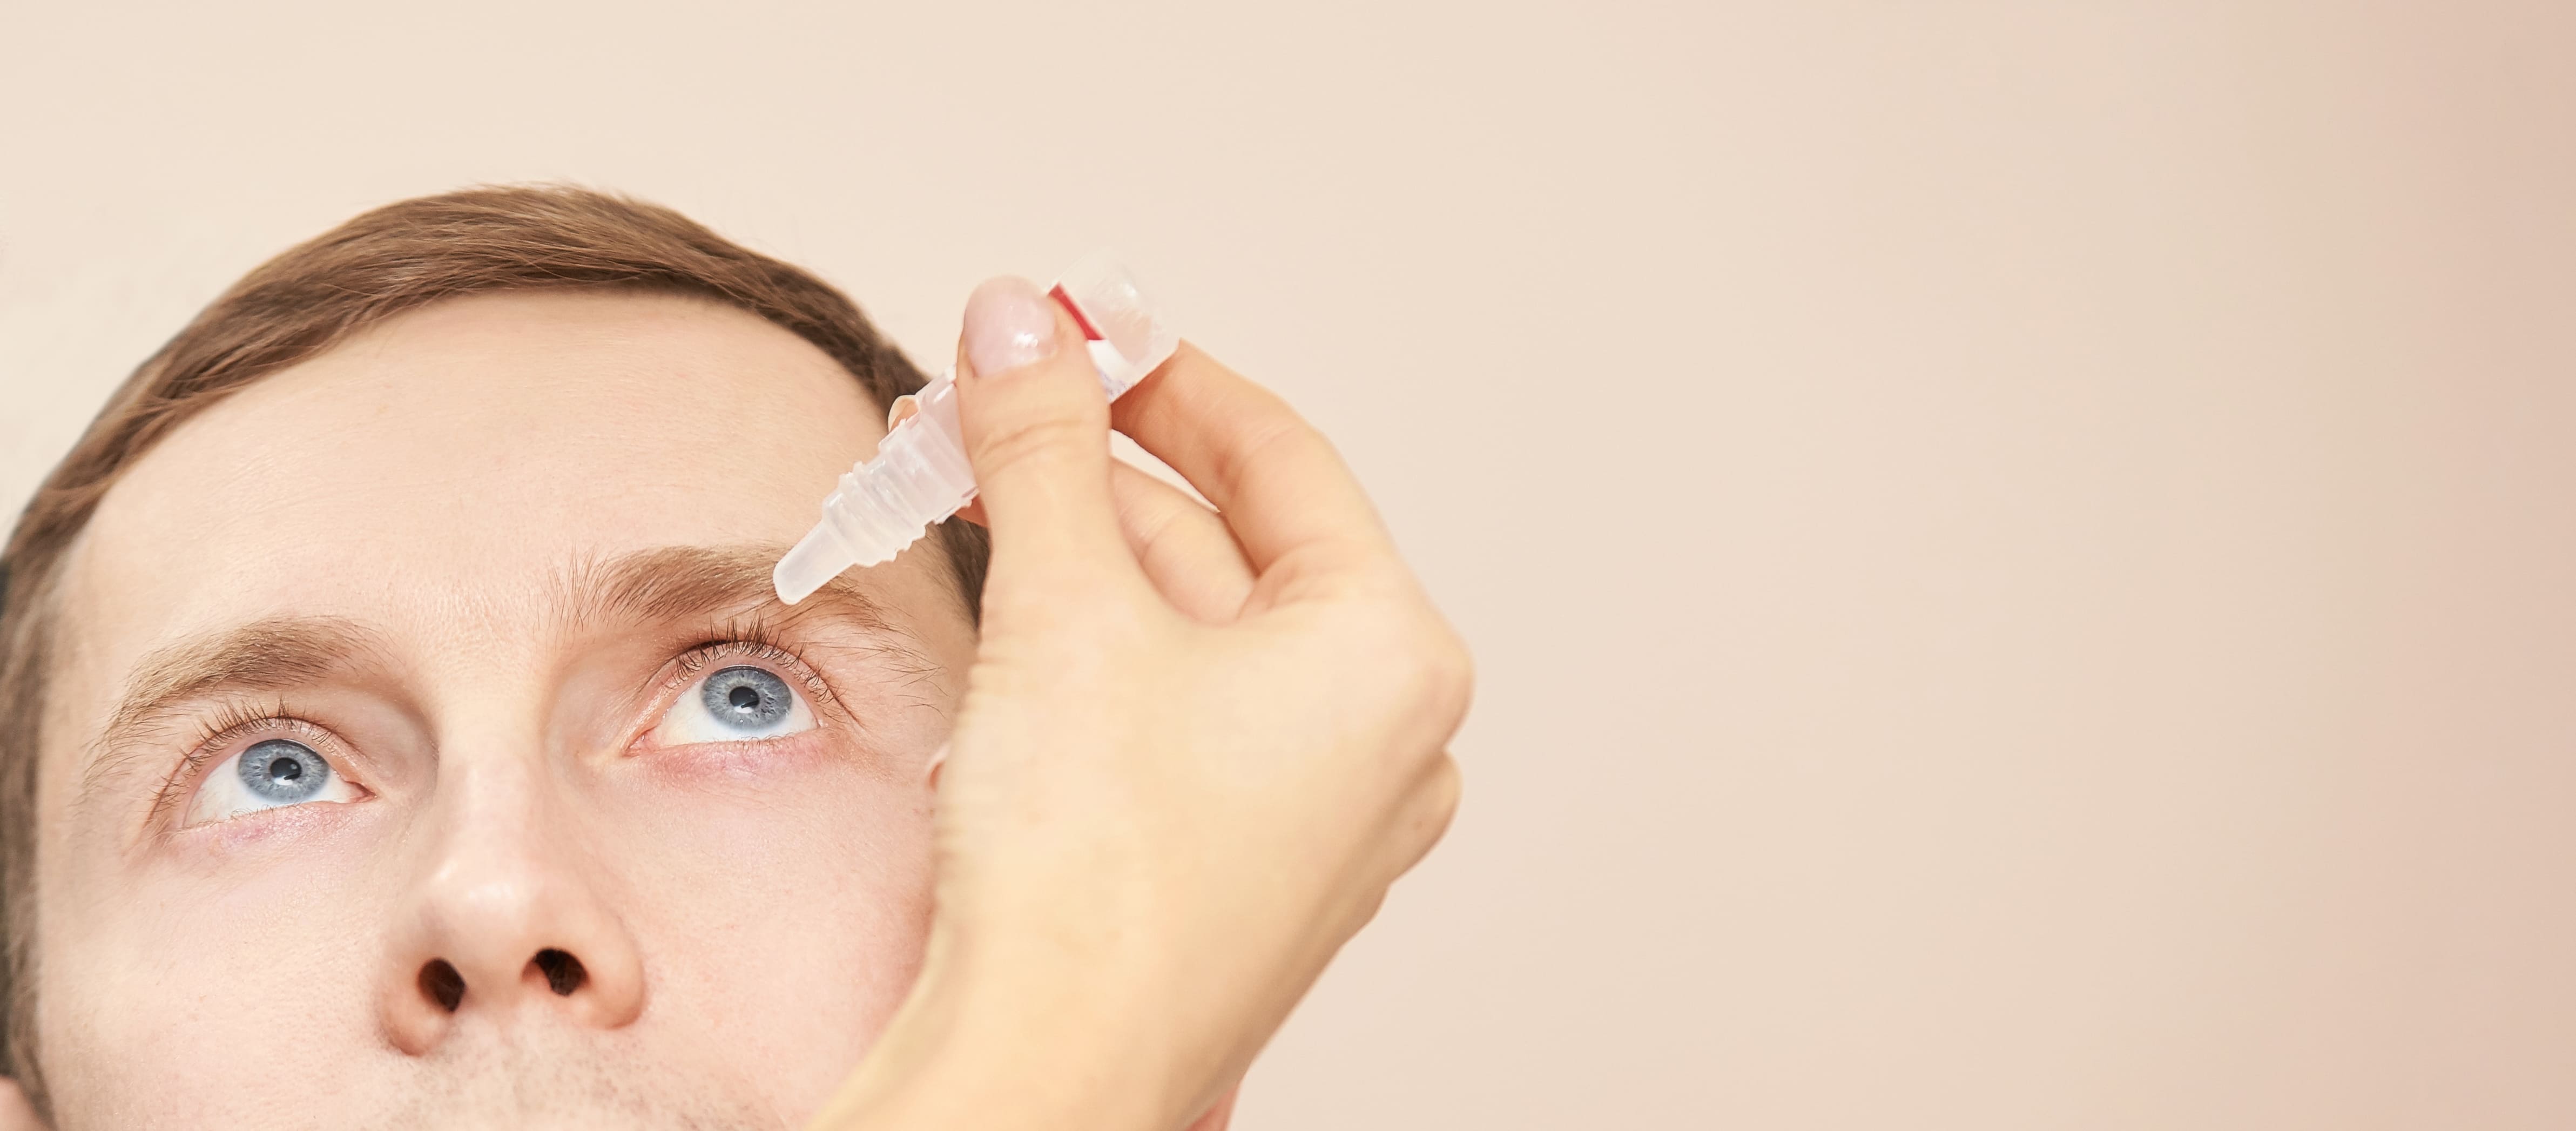 Dilatar a pupila: por que precisa em alguns exames?